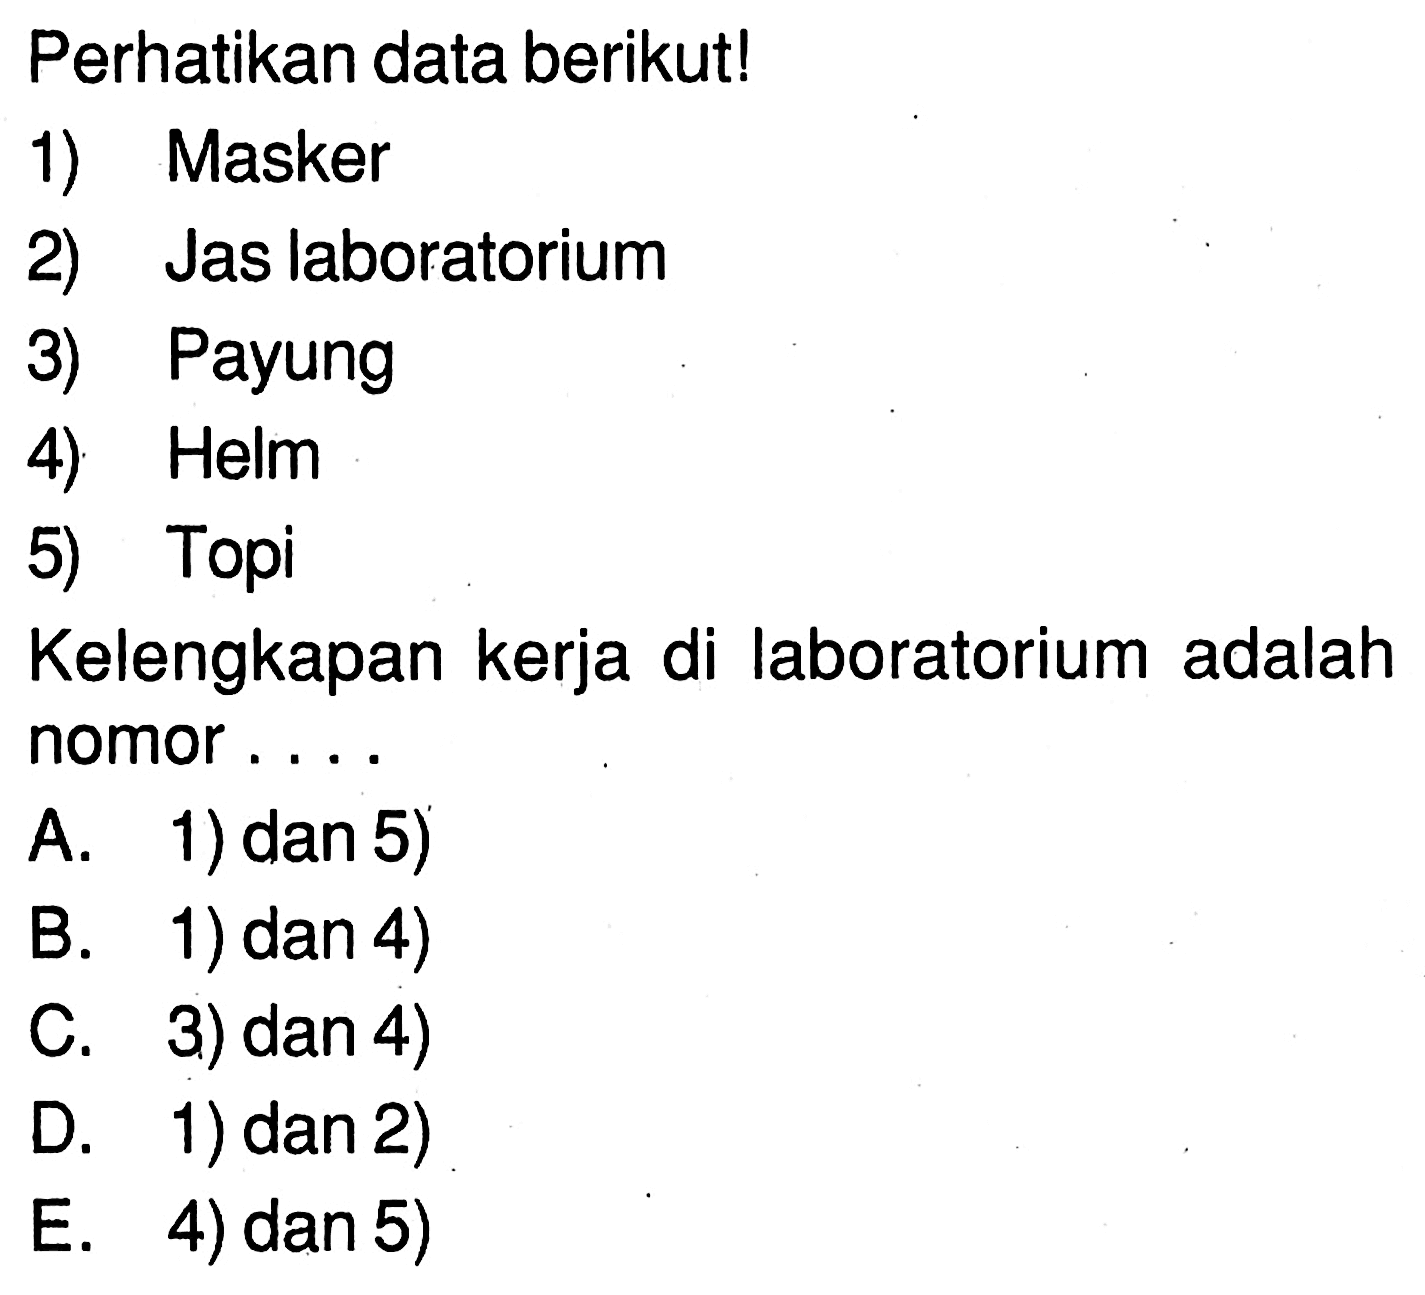 Perhatikan data berikut! 1) Masker 2) Jas laboratorium 3) Payung 4) Helm 5) Topi Kelengkapan kerja di laboratorium adalah nomor ...